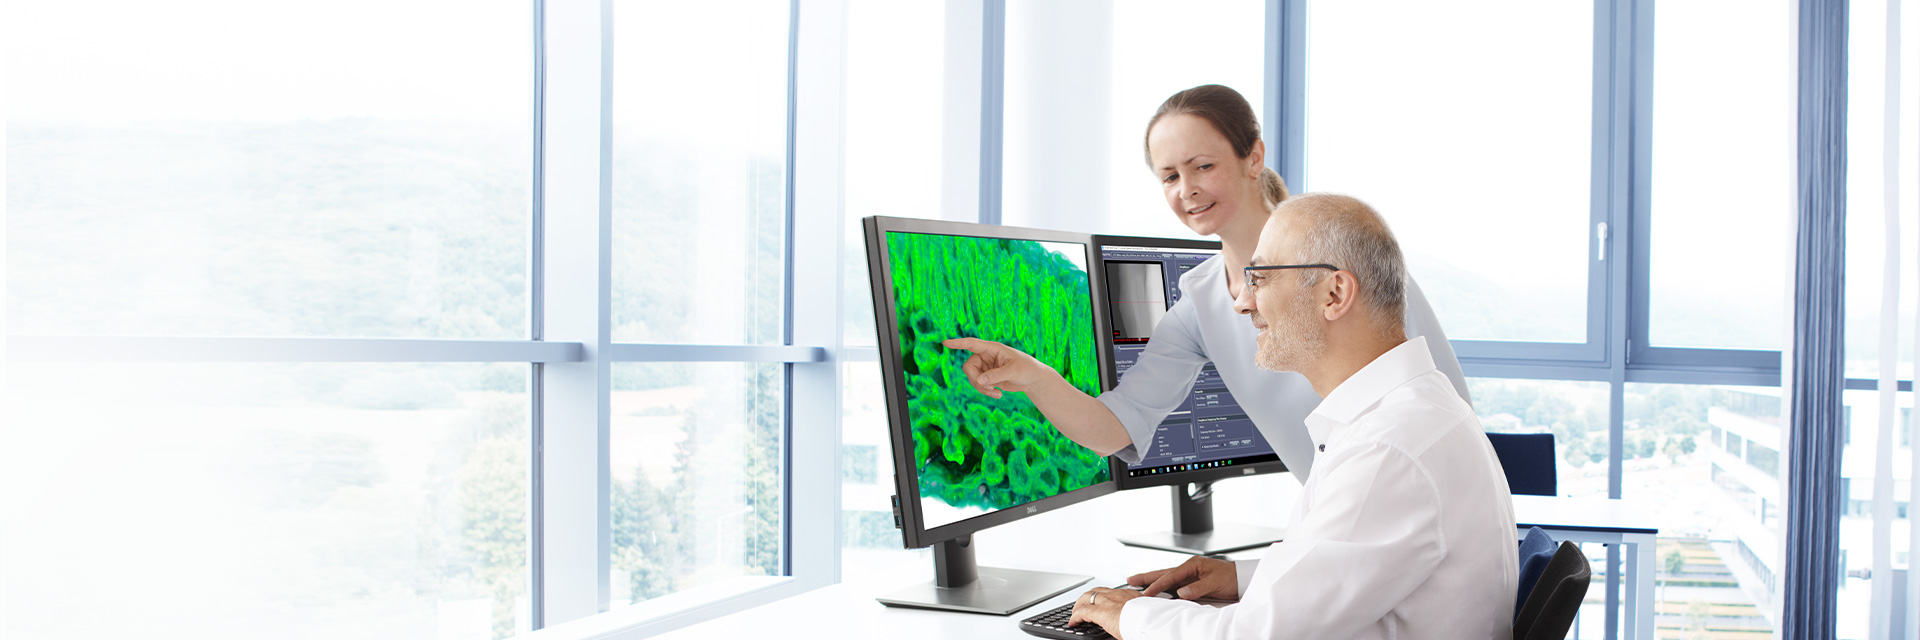 Software für die Röntgenmikroskopie – Softwarelösungen für das hochauflösende 3D-Röntgen-Imaging